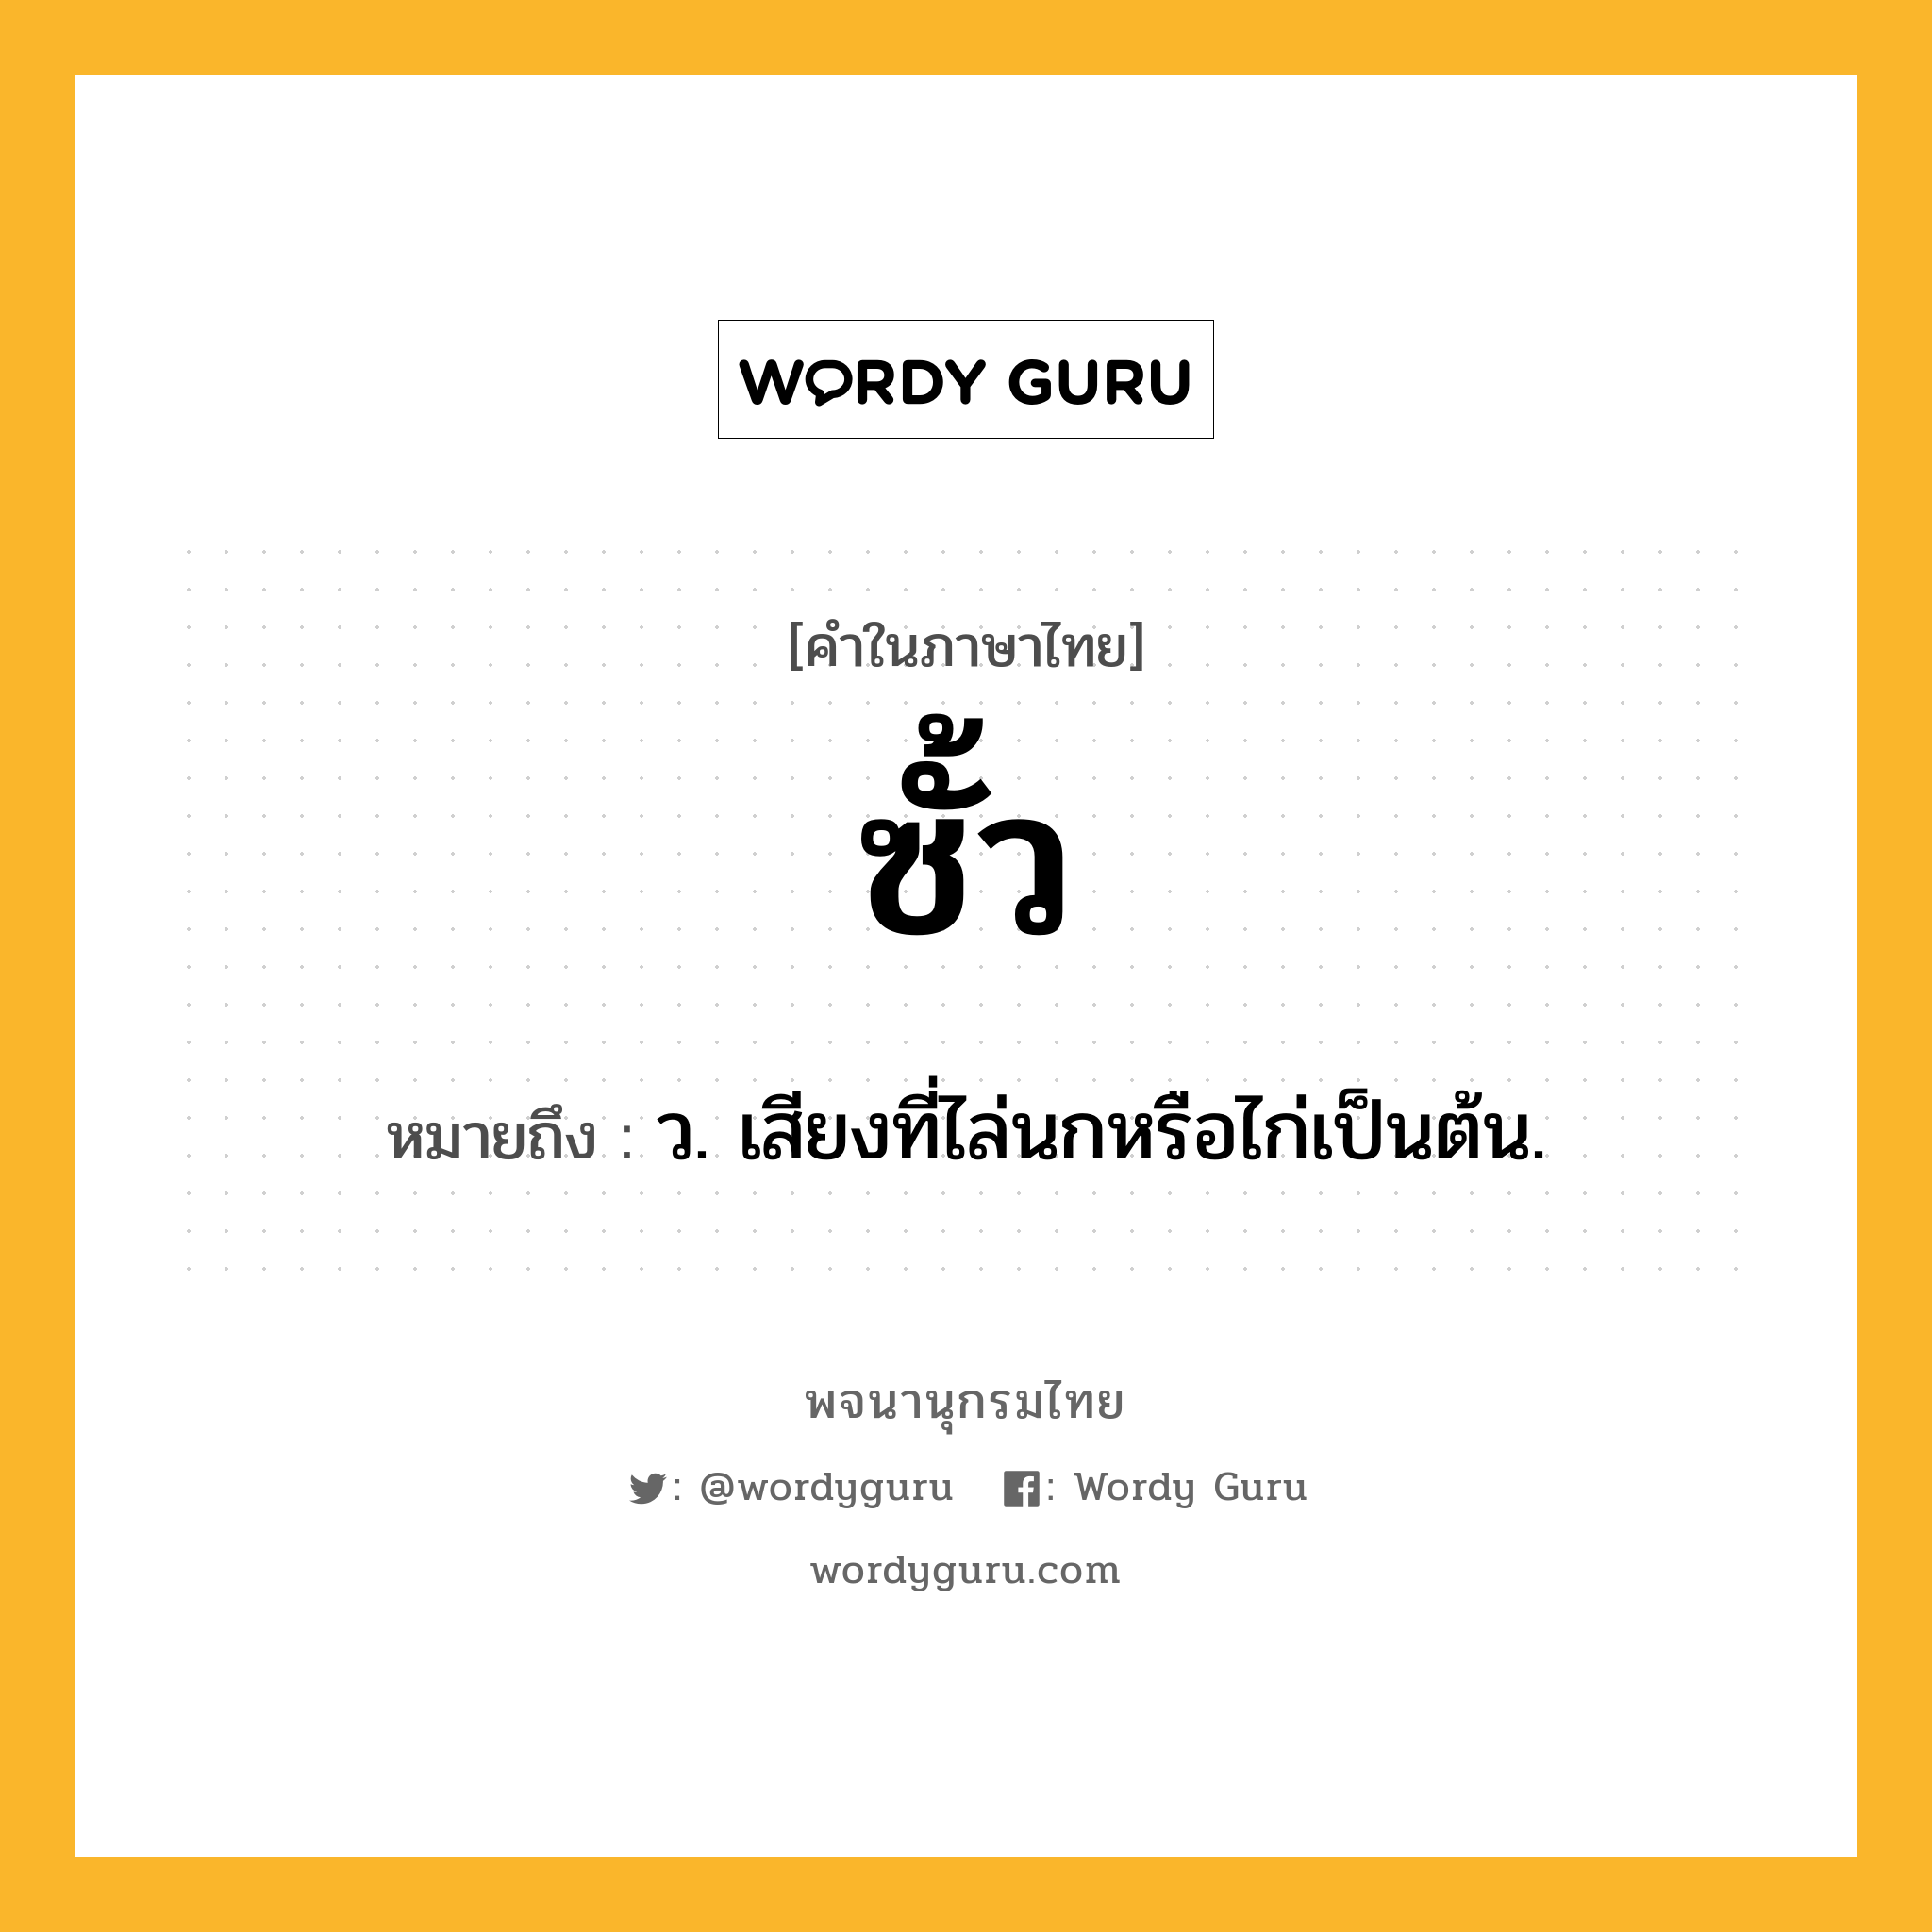 ซั้ว ความหมาย หมายถึงอะไร?, คำในภาษาไทย ซั้ว หมายถึง ว. เสียงที่ไล่นกหรือไก่เป็นต้น.